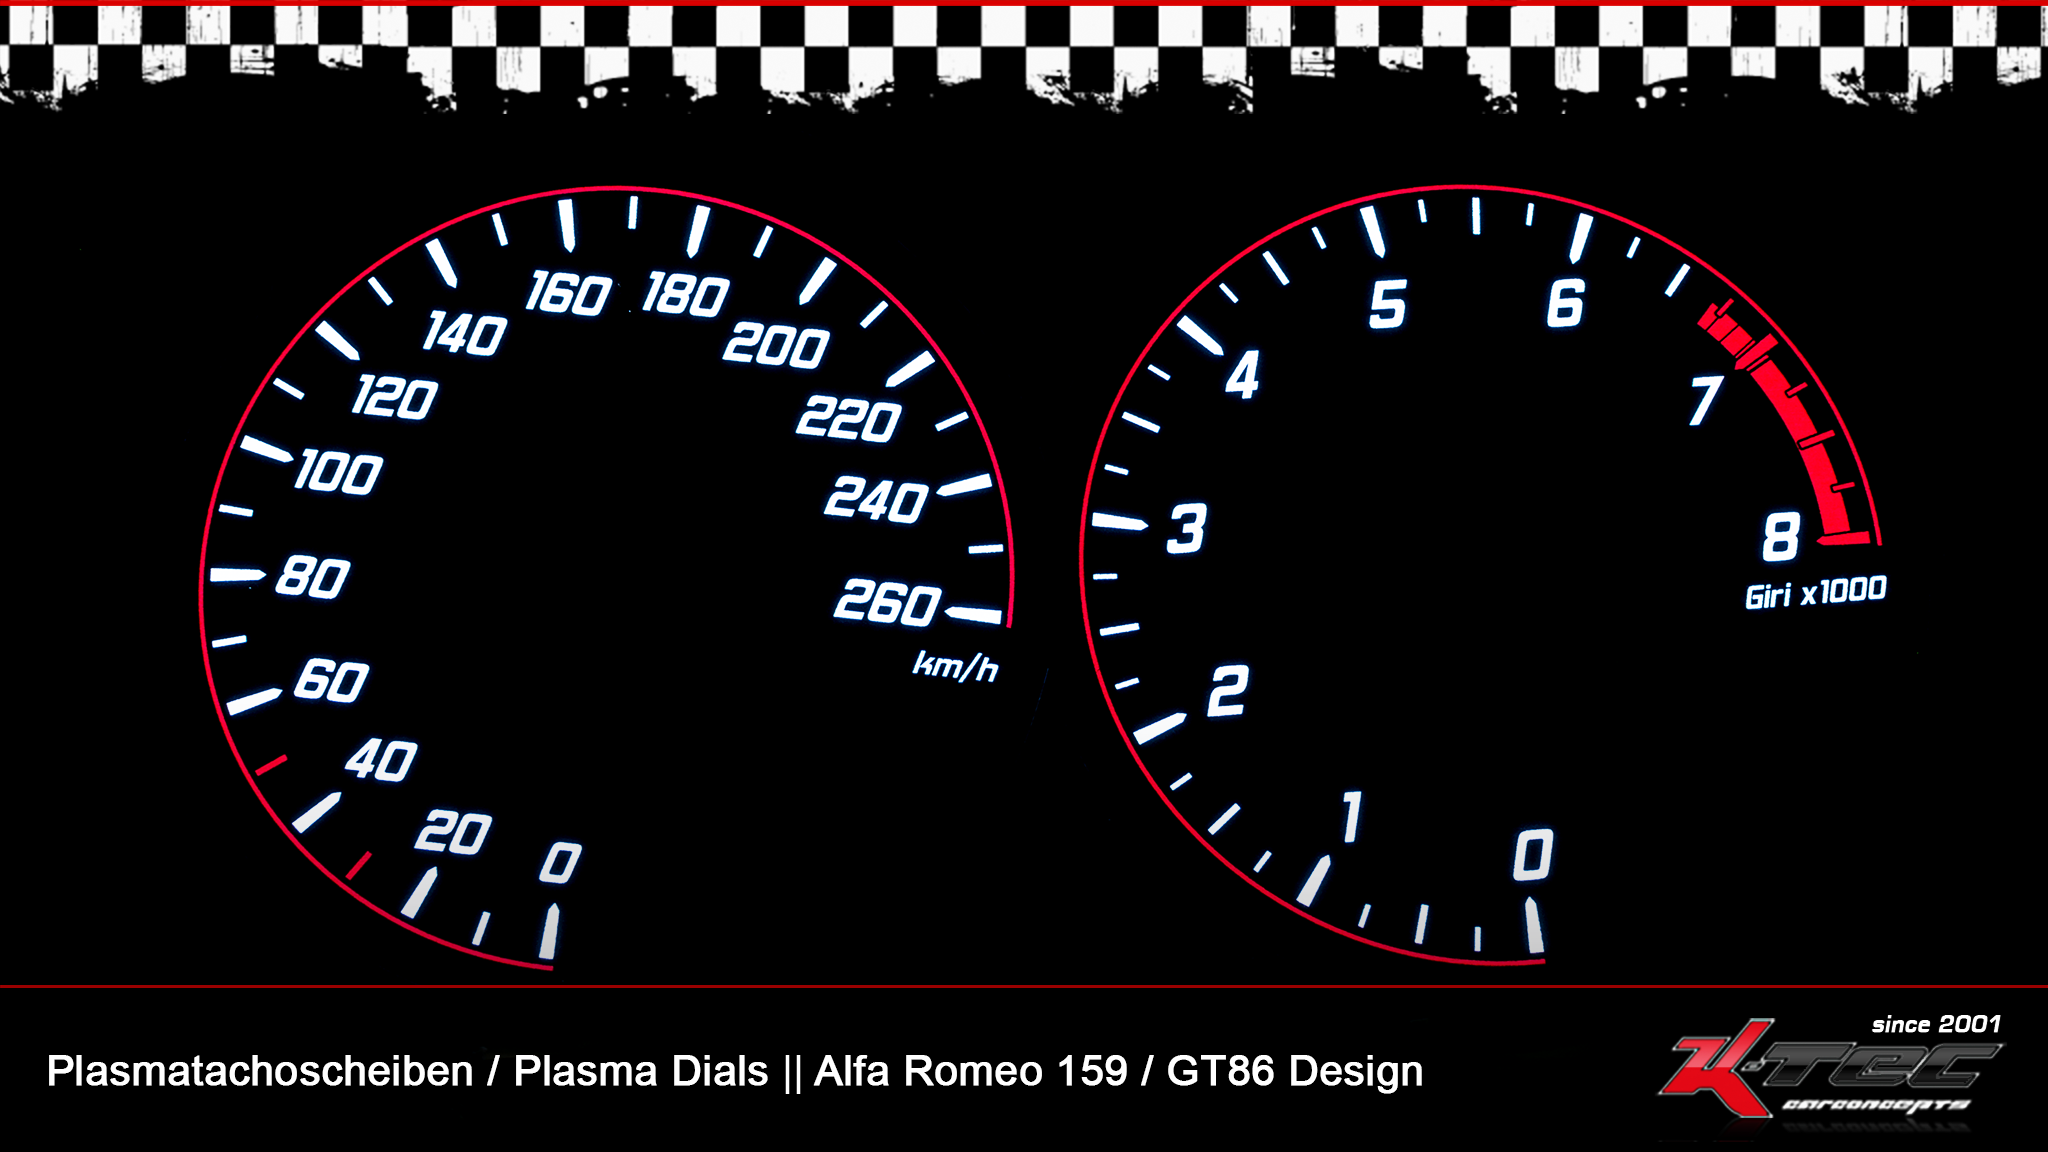 tachoscheiben Plasmatachoscheiben Alfa Romeo